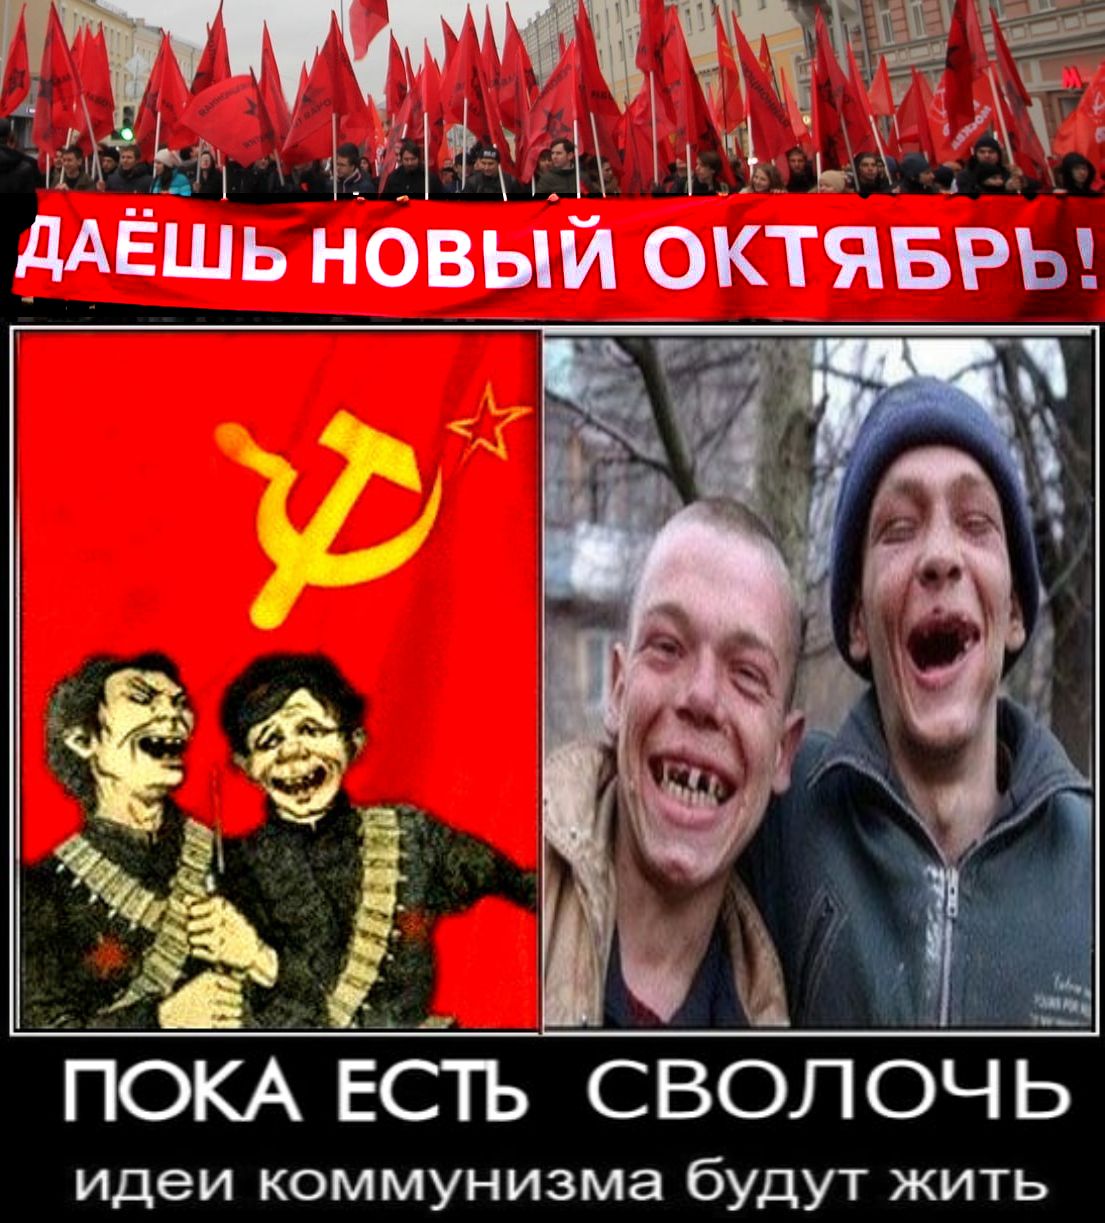 «И вновь о коммунистах и антикоммунистах: возможен ли «Новый Октябрь»?». — Не исключено; ведь Путин, точно так же, как и Керенский, постоянно заигрывает с кр✭сной сволочью. «Октябрь» вполне возможен. Потому, как и в 1917г., — Белого противовеса красным коммуно-скотам сегодня нет.